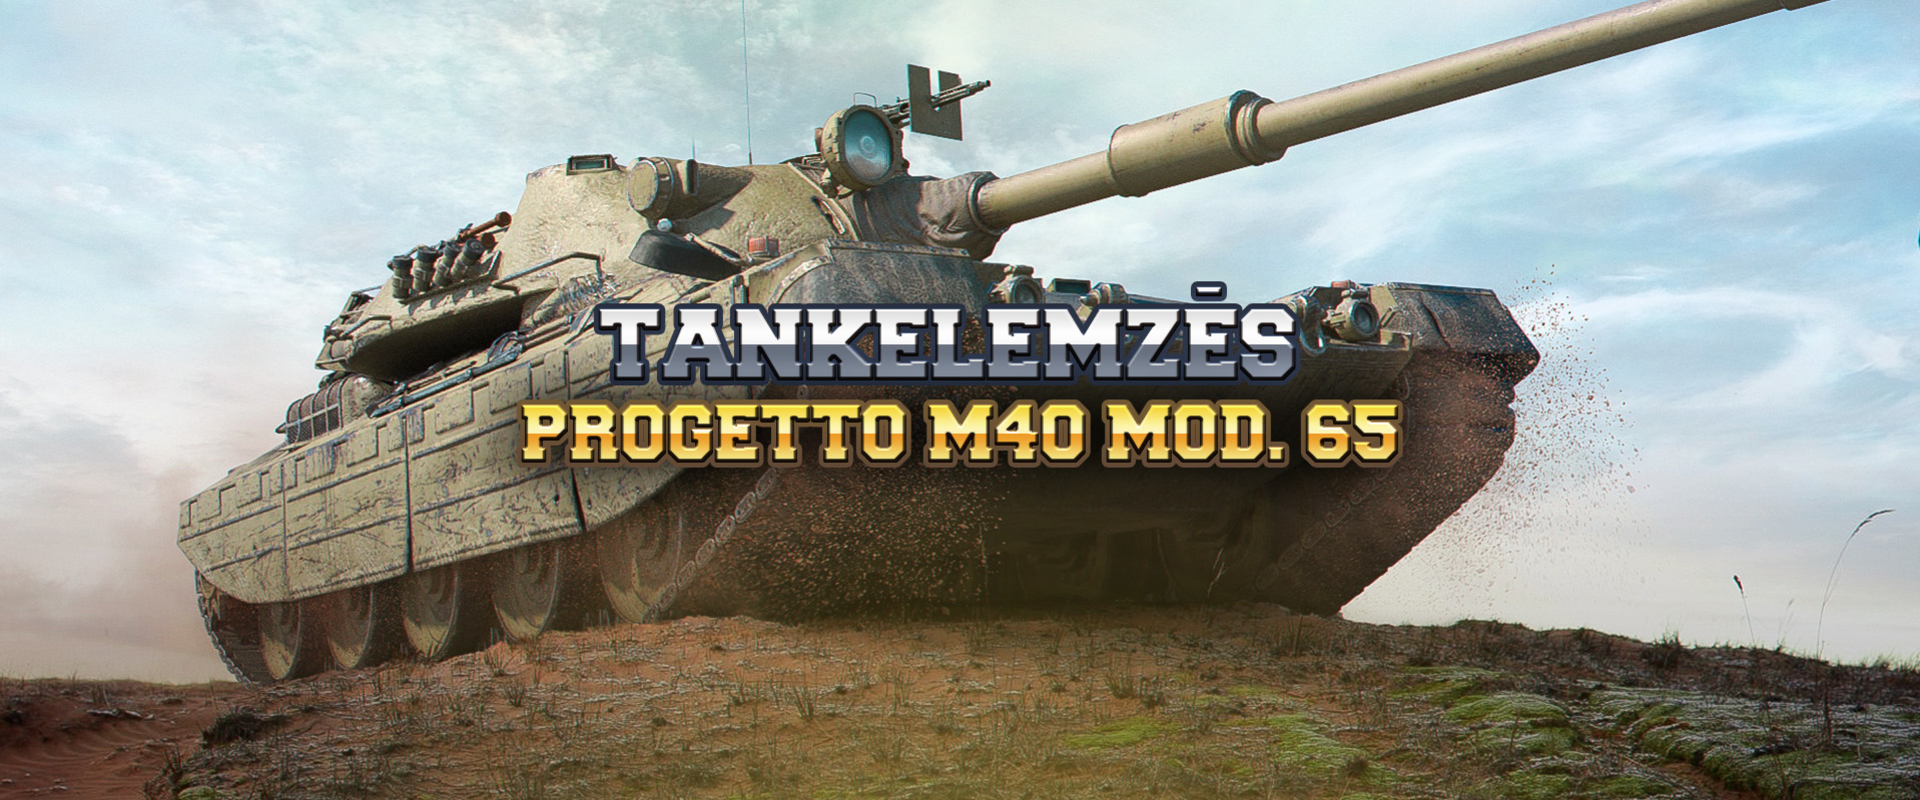 Milyen tank valójában a Progetto M40 mod. 65?